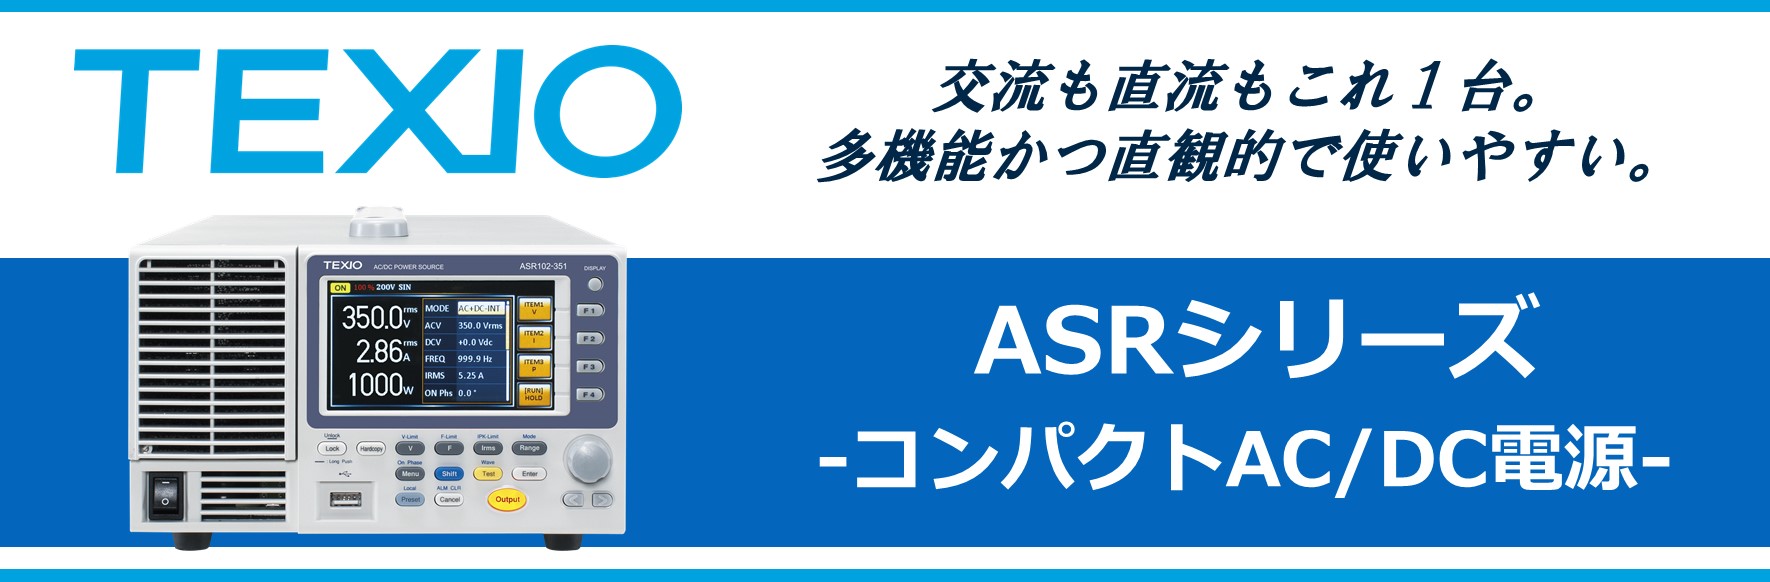 【新製品】ASRシリーズ コンパクトAC/DC電源